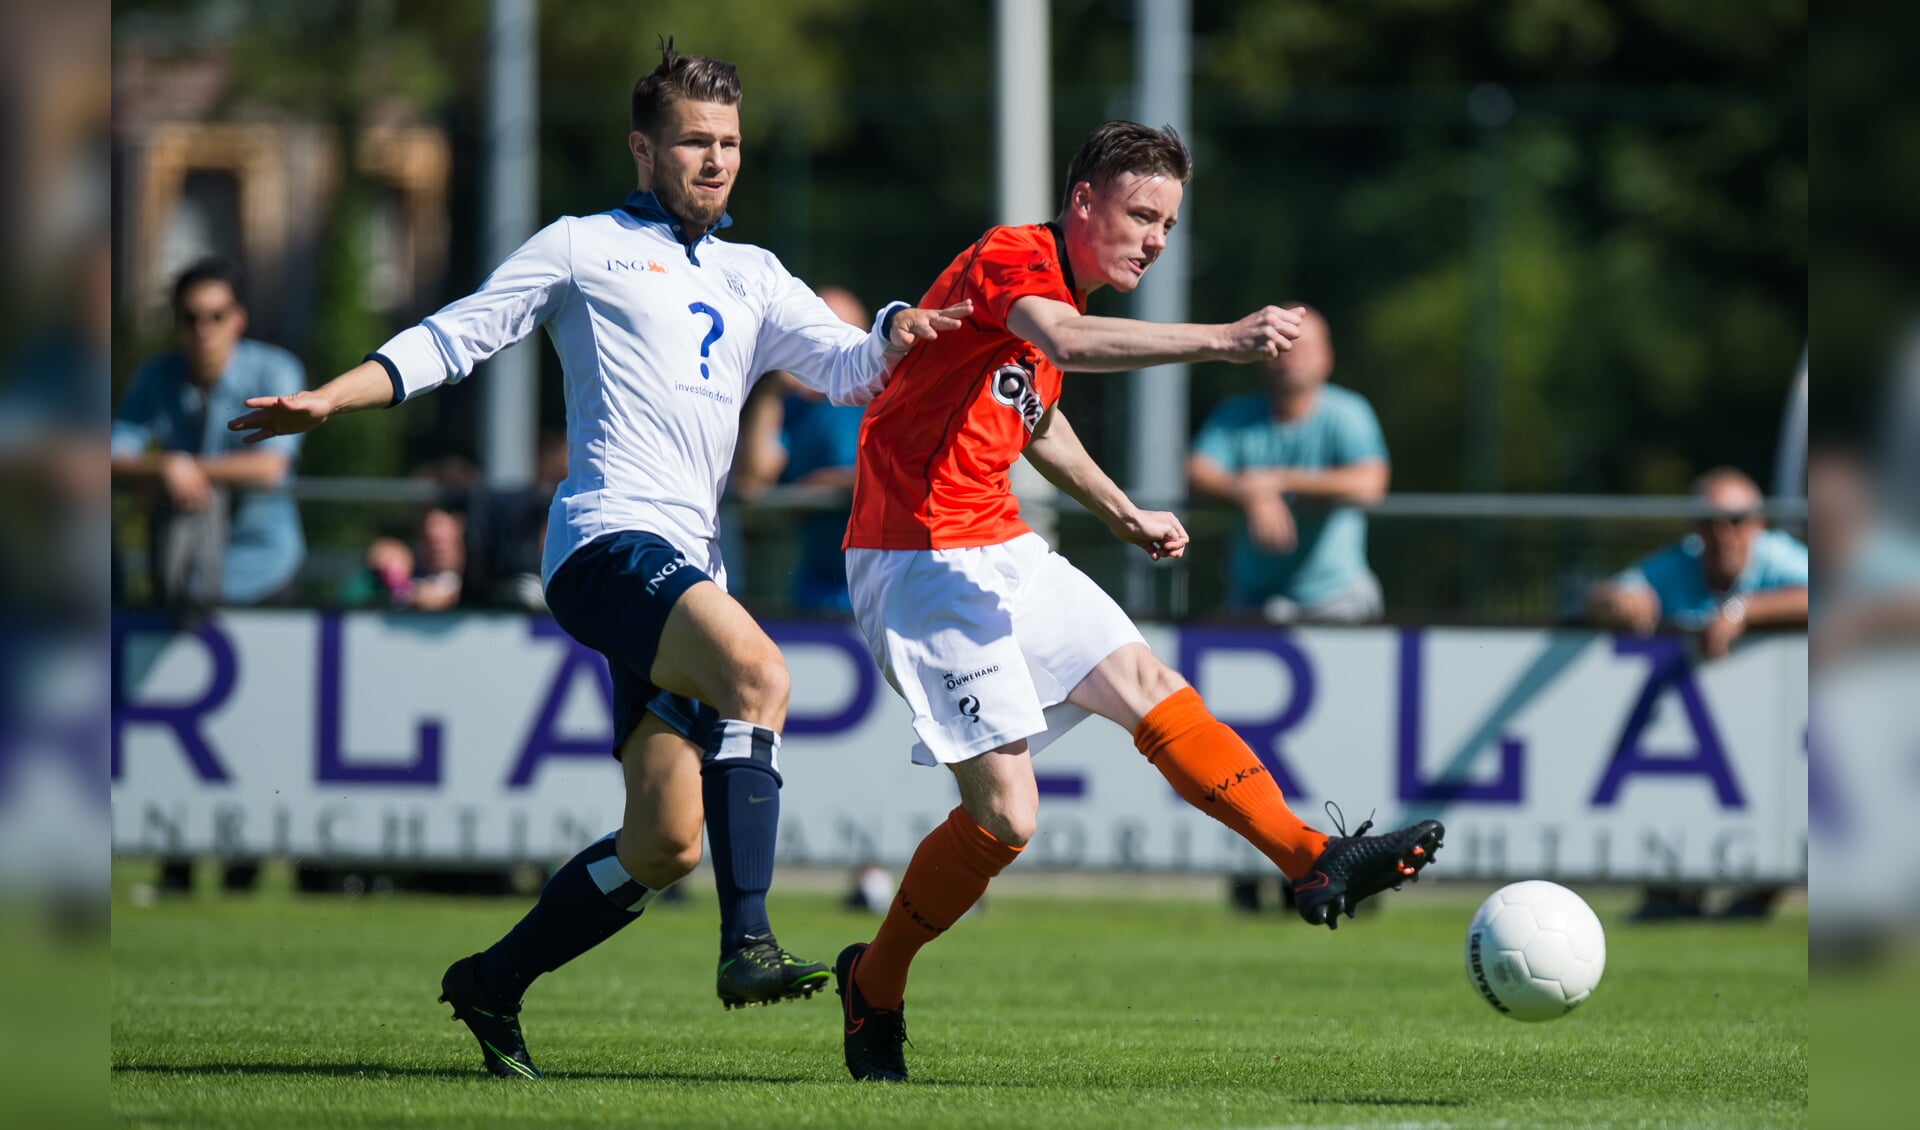 Mark de Loor scoorde het verlossende doelpunt en redde voor Katwijk de wedstrijd. | Foto: OrangePictures